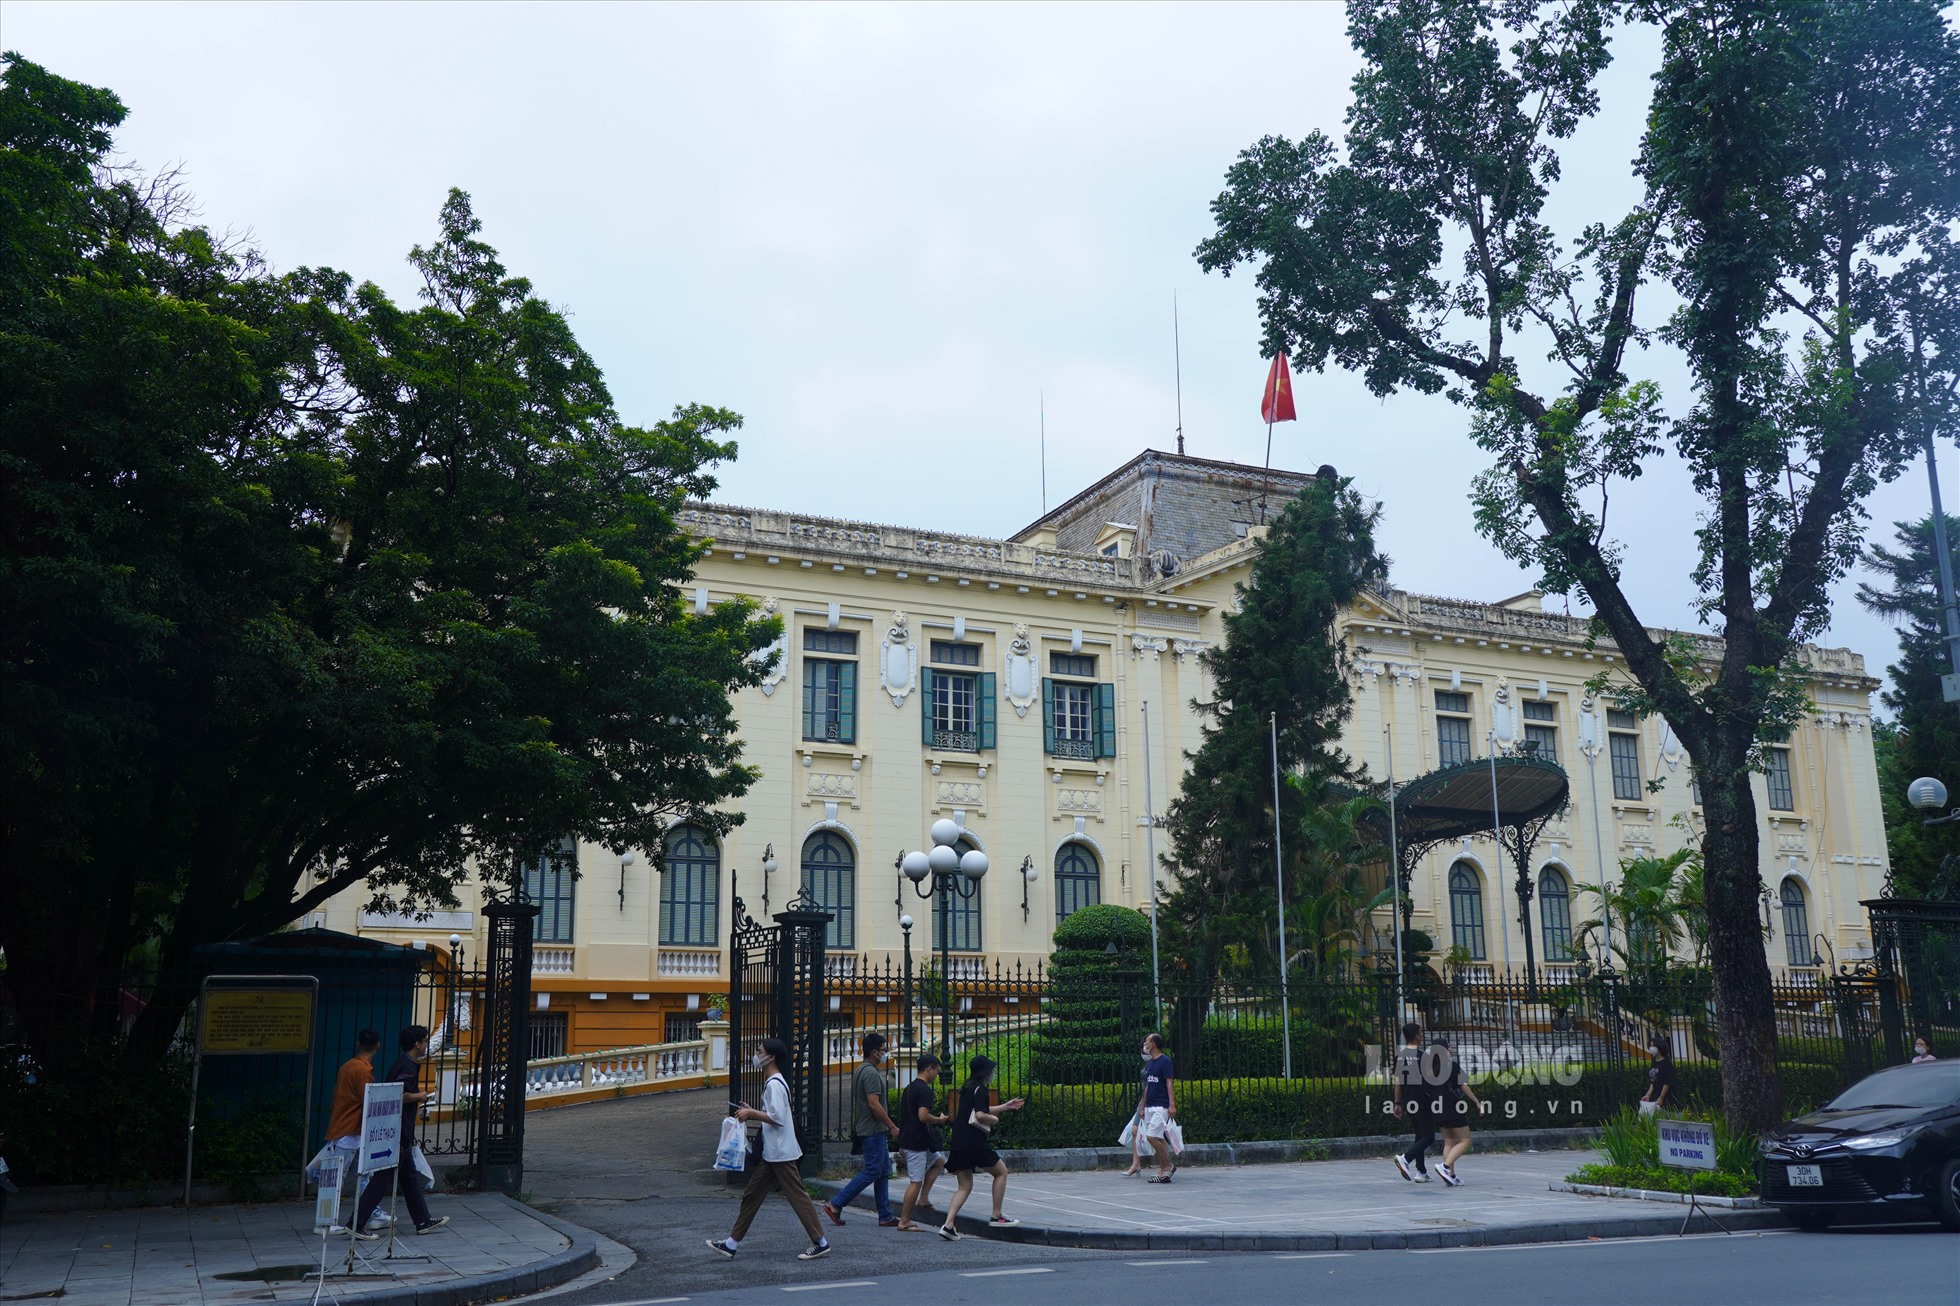 Bắc Bộ phủ, nay là Nhà khách Chính phủ, được xây dựng vào năm 1918. Nơi đây chứng kiến nhiều dấu mốc lịch sử quan trọng từ thời kỳ Cách mạng Tháng Tám 1945 hay Giải phóng Thủ đô năm 1954.